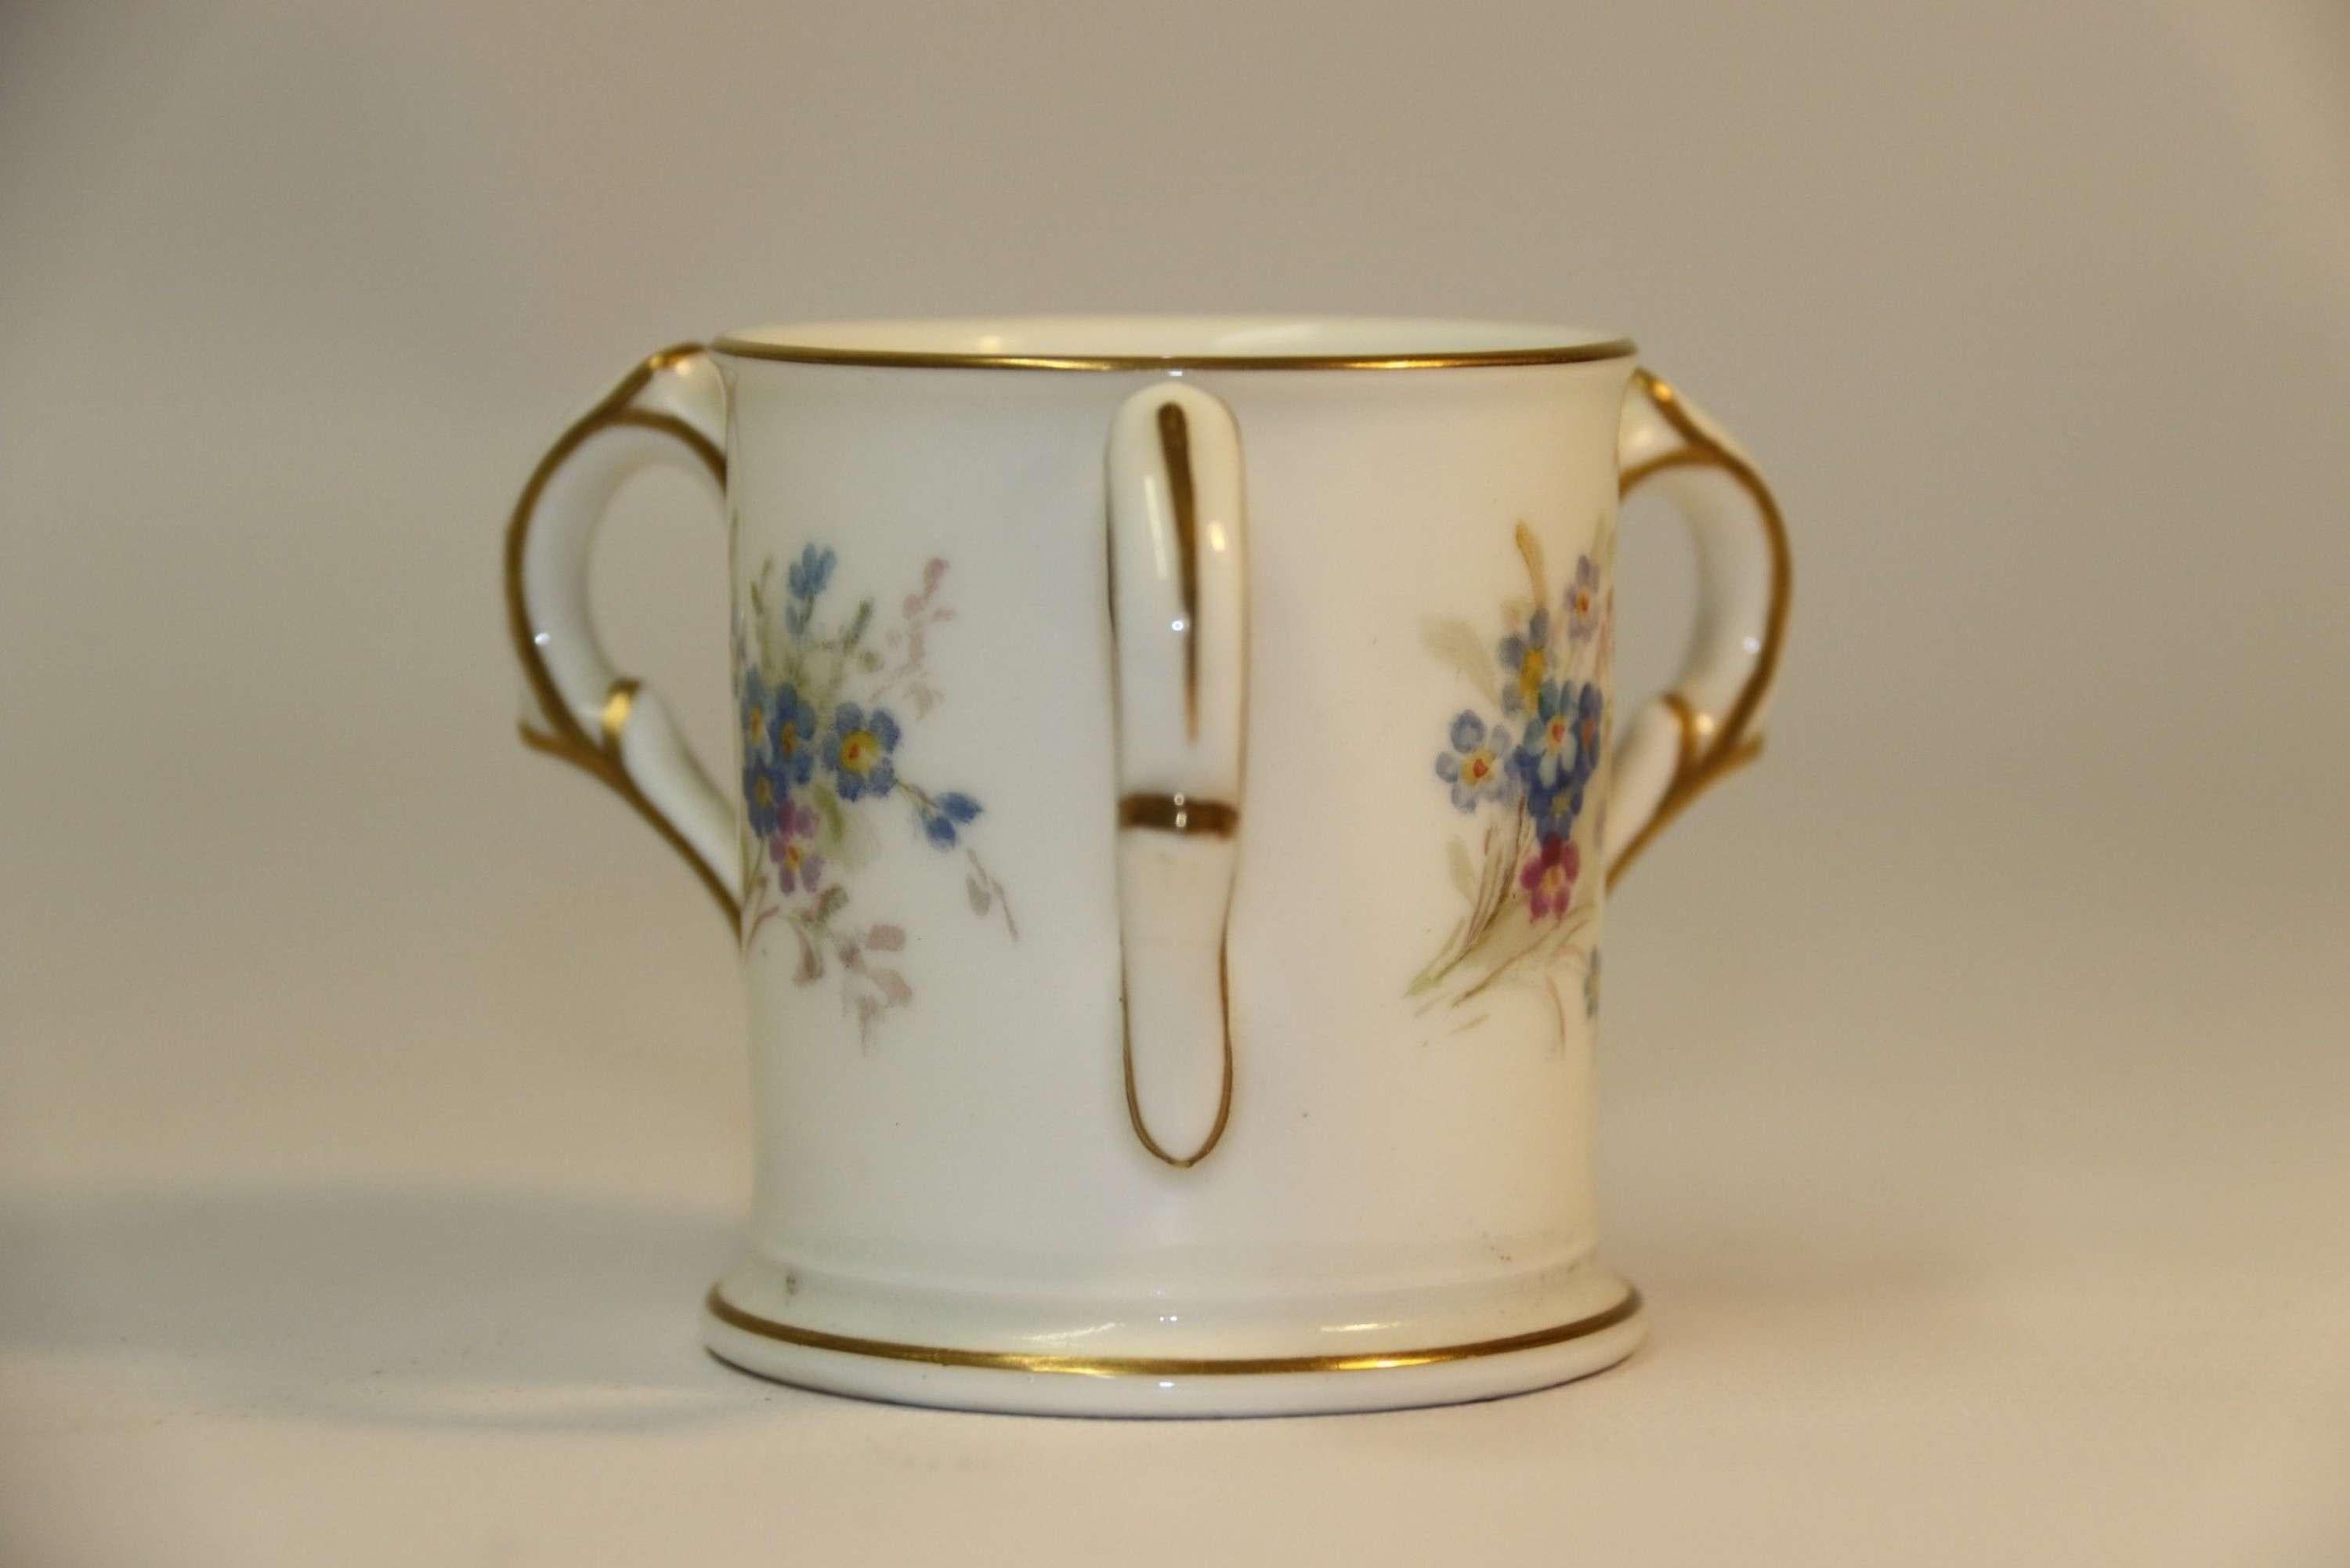 Une tasse d'amour miniature en porcelaine Royal Worcester.

Cette ravissante tasse d'amour miniature en porcelaine Royal Worcester du début du XXe siècle présente un fond blanc avec de fabuleuses gerbes de myosotis peintes à la main. Elles sont